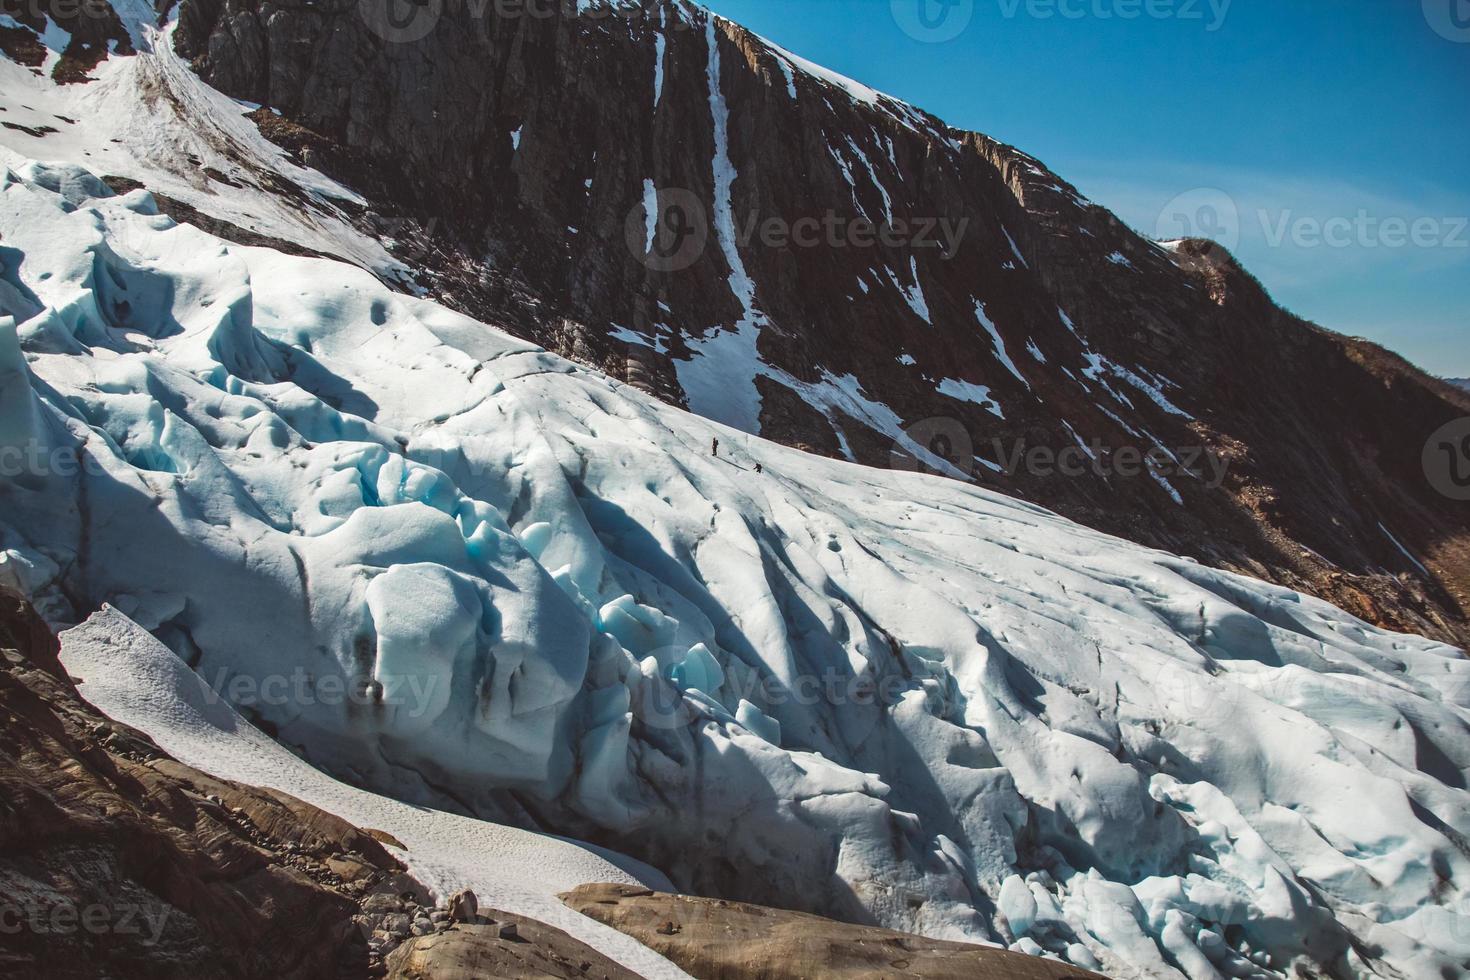 uno splendido scenario sulle montagne e il paesaggio del ghiacciaio svartisen in norvegia punti di riferimento della natura scandinava concetto di ecologia. neve blu e ghiaccio foto